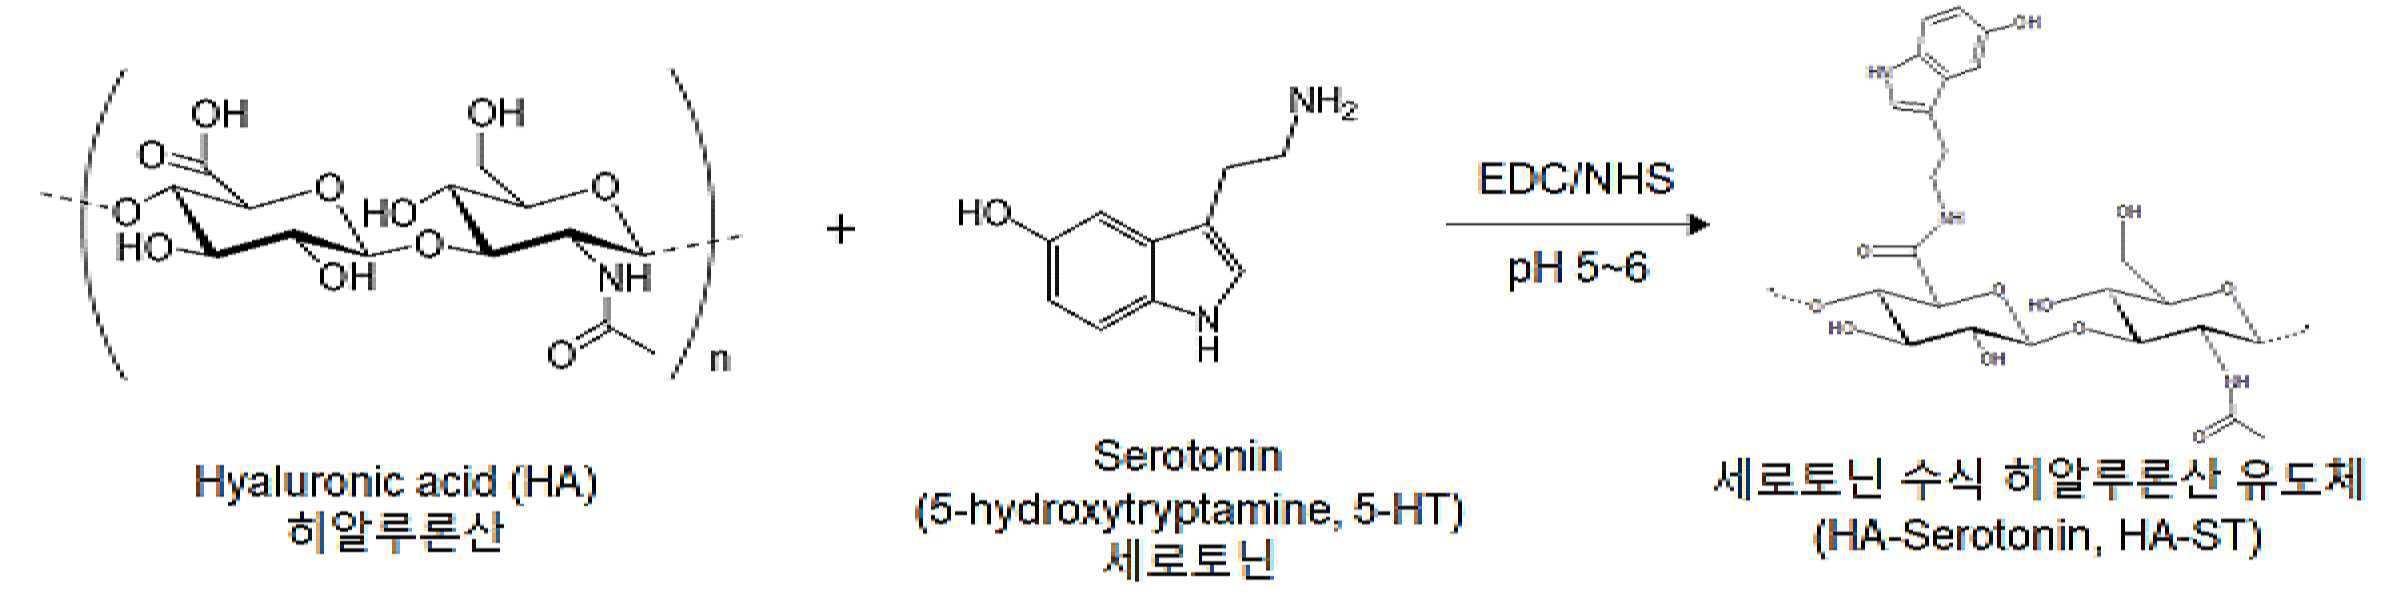 세로토닌 수식 히알루론산을 포함하는 하이드로젤 및 이의 용도 대표 이미지